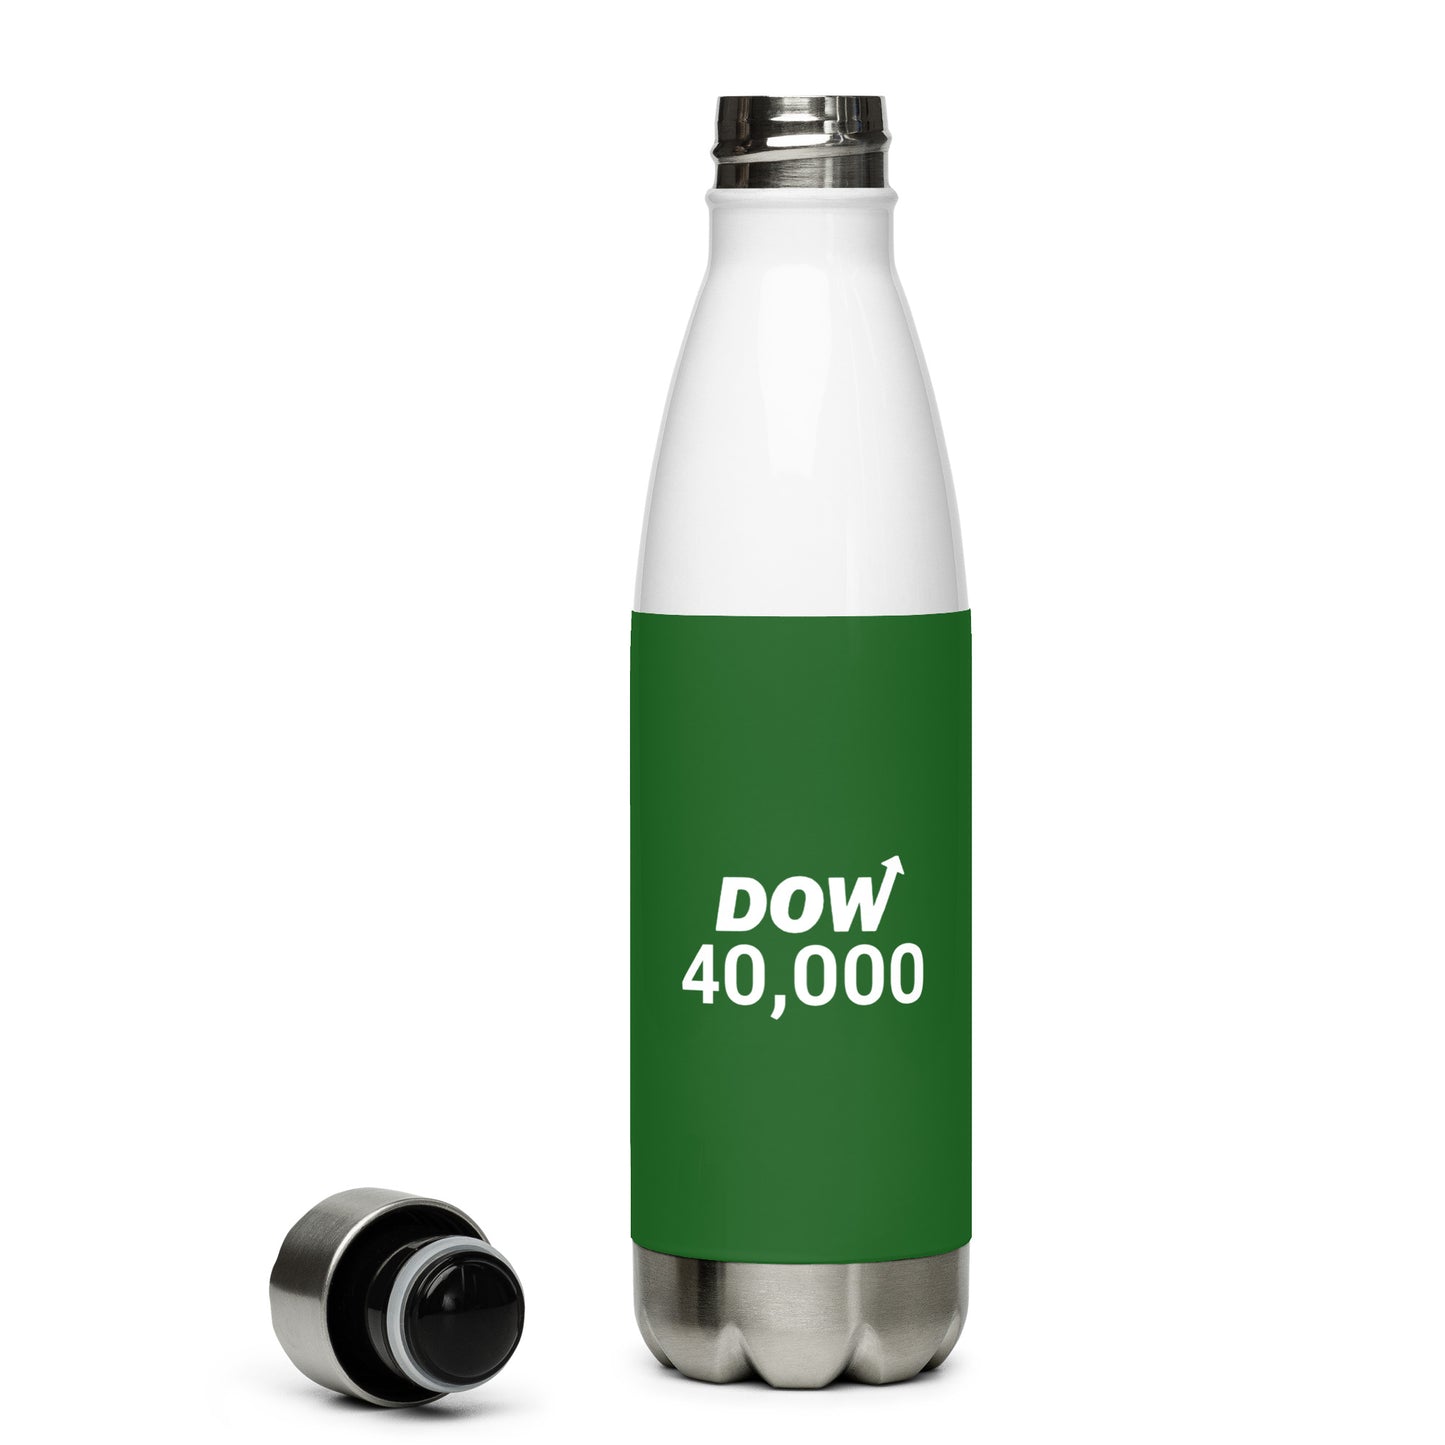 Dow 40.000 water bottle / Dow 40k Bottle /Stainless steel water bottle